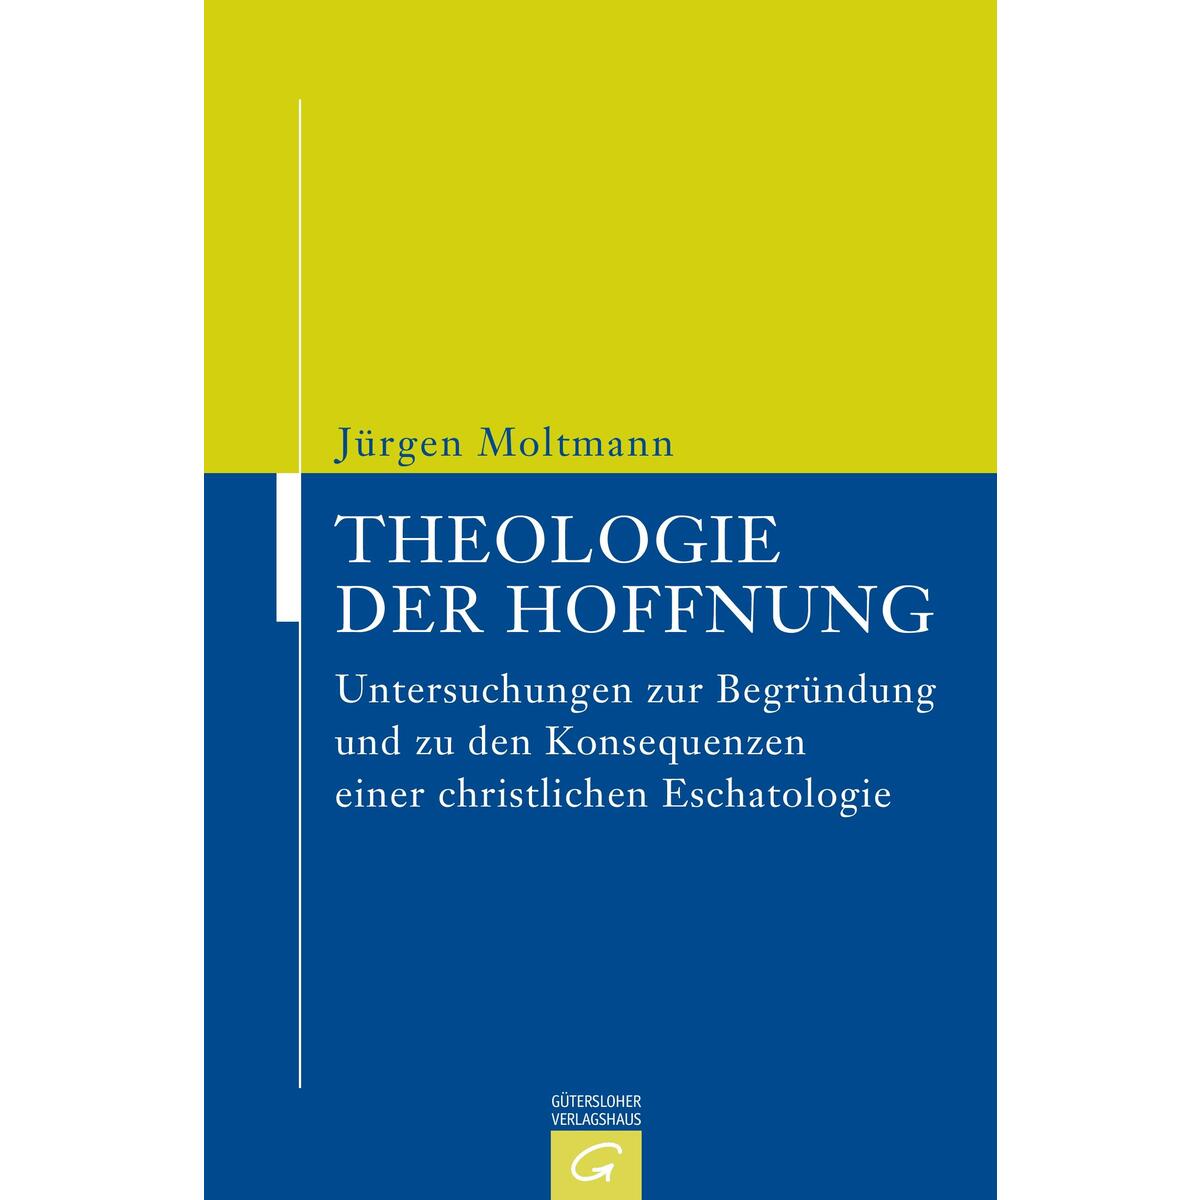 Theologie der Hoffnung von Guetersloher Verlagshaus